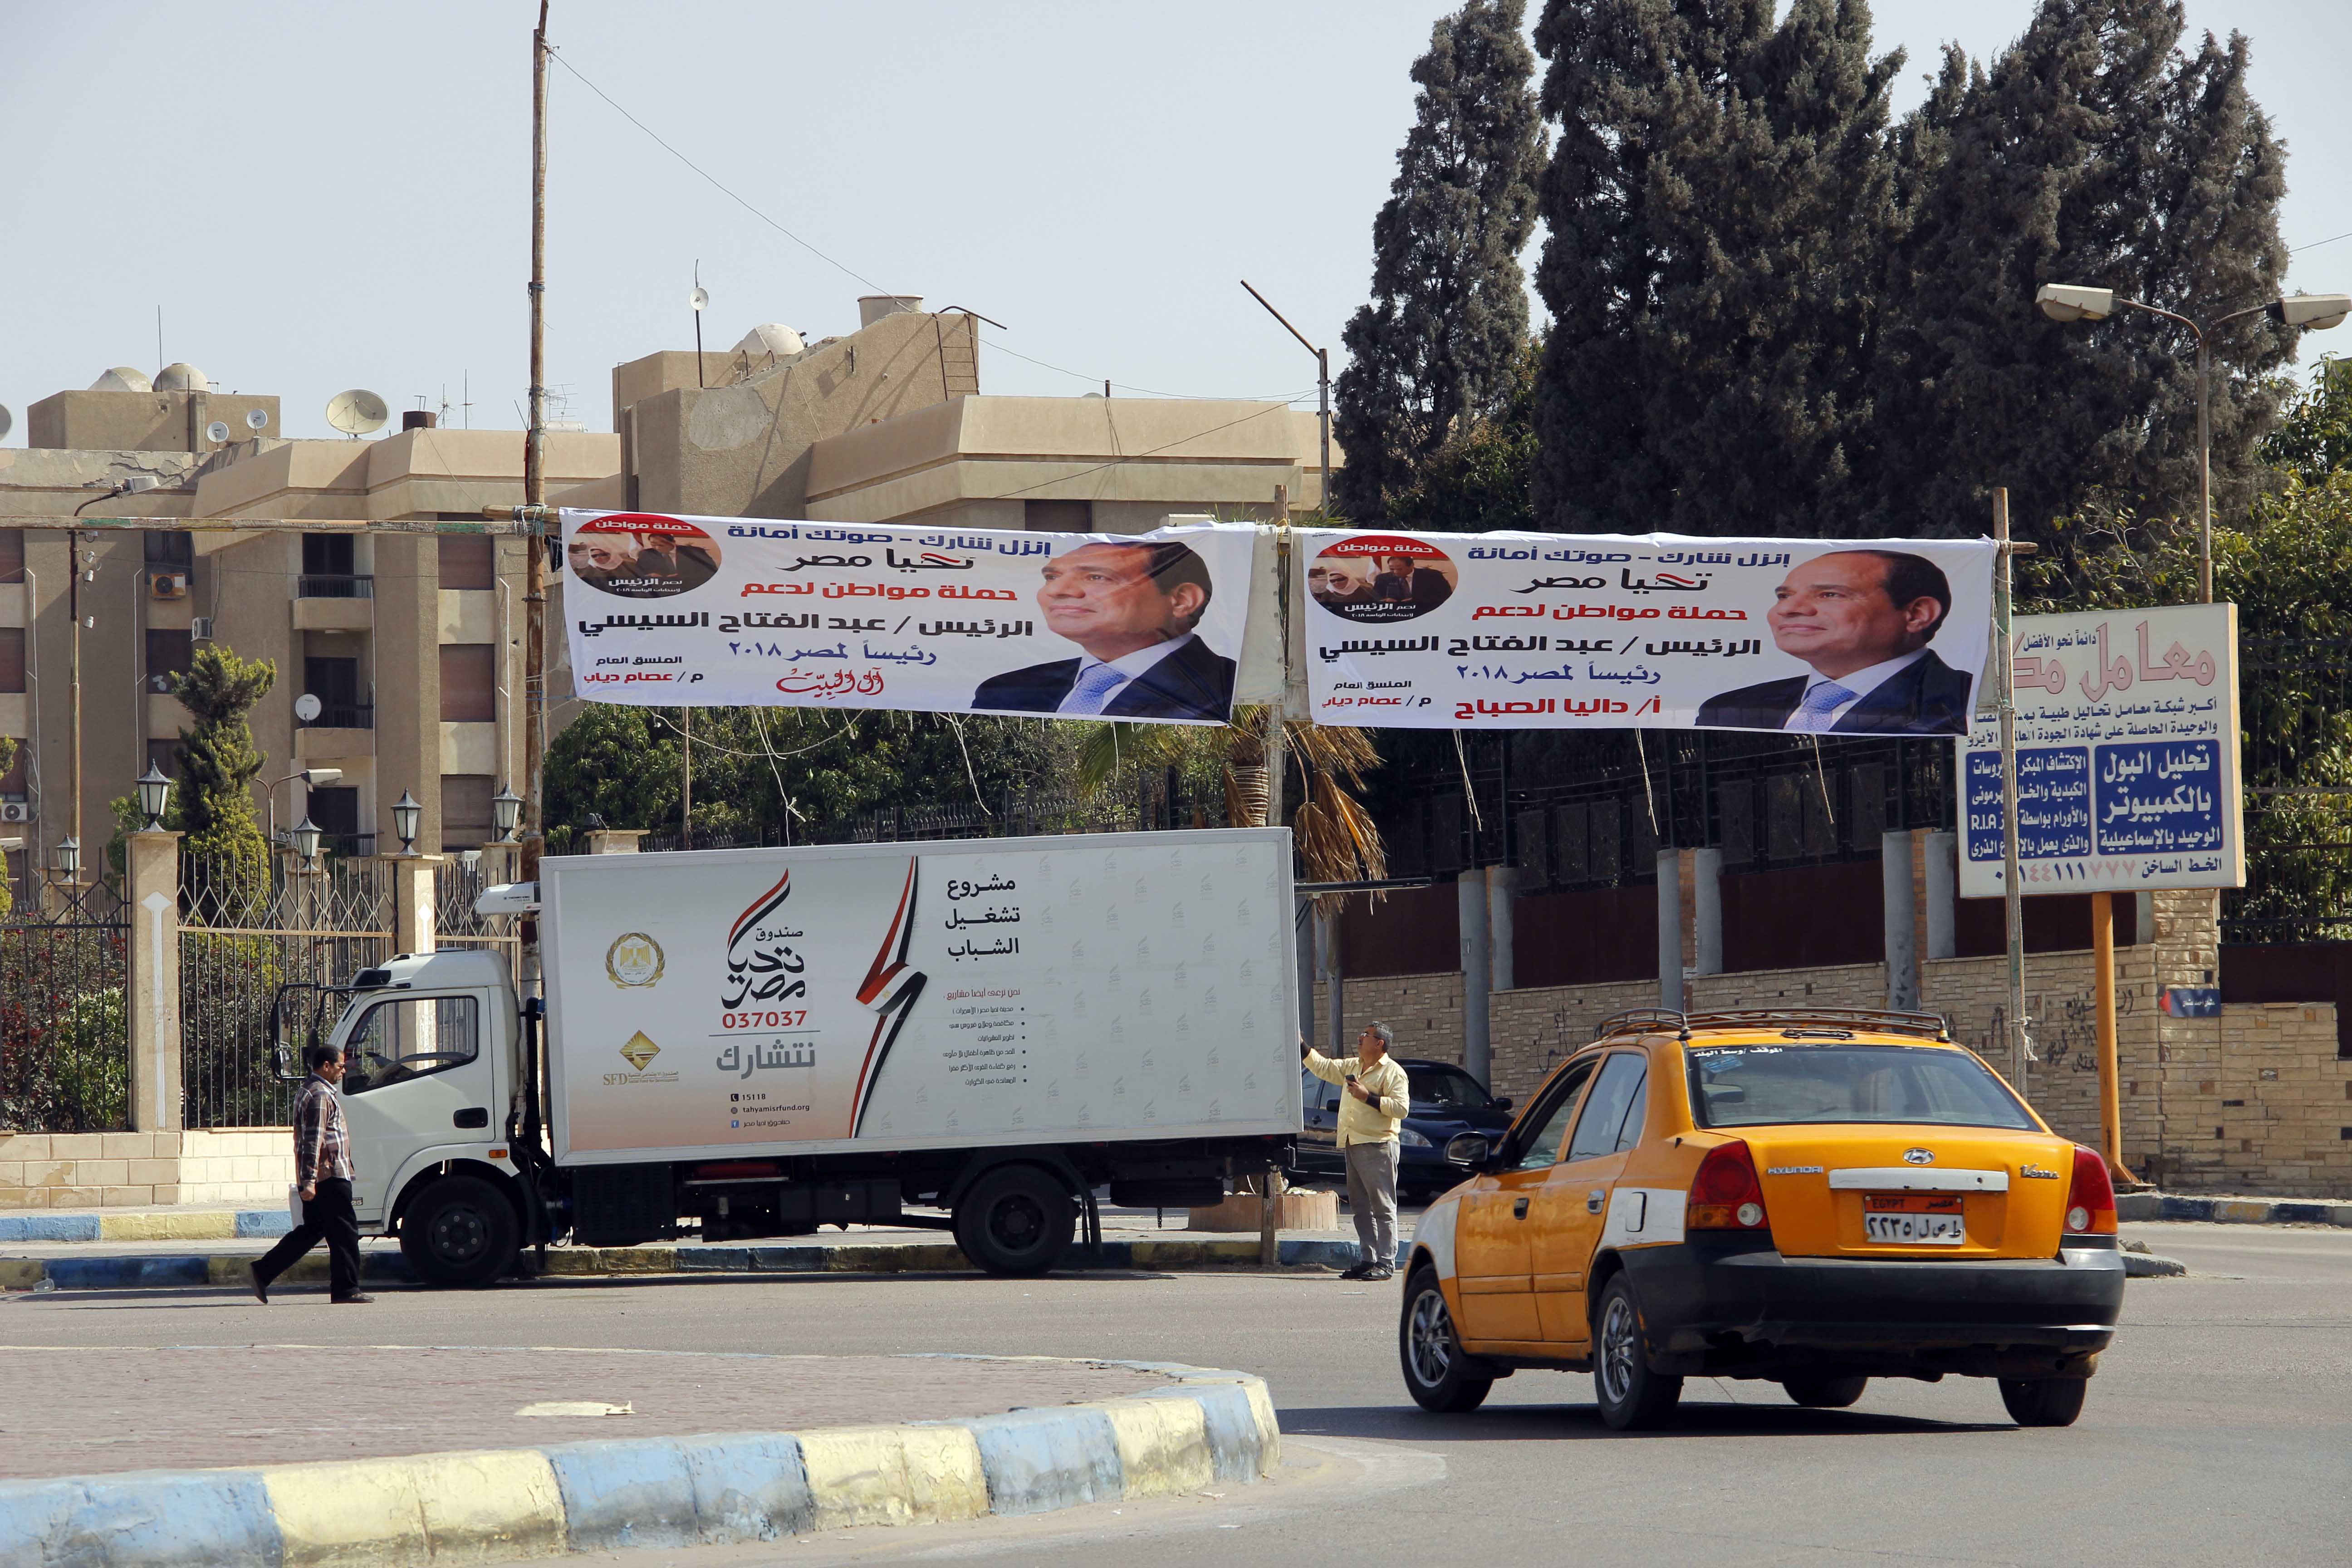 لافتات دعم السيسي تنتشر فس شوارع الإسماعيلية - تصوير  محمد عوض  (7)